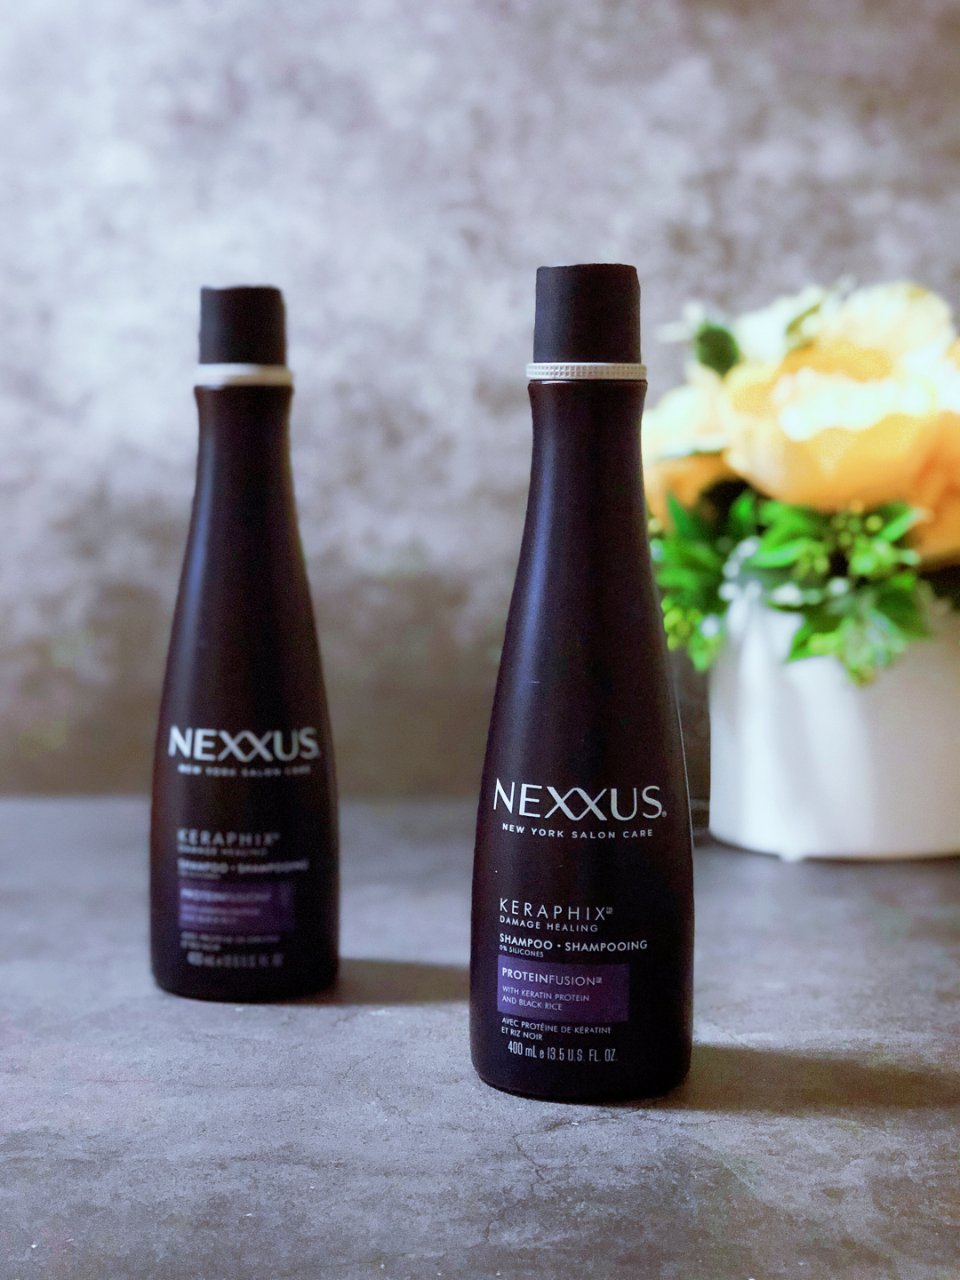 Nexxus,洗发水